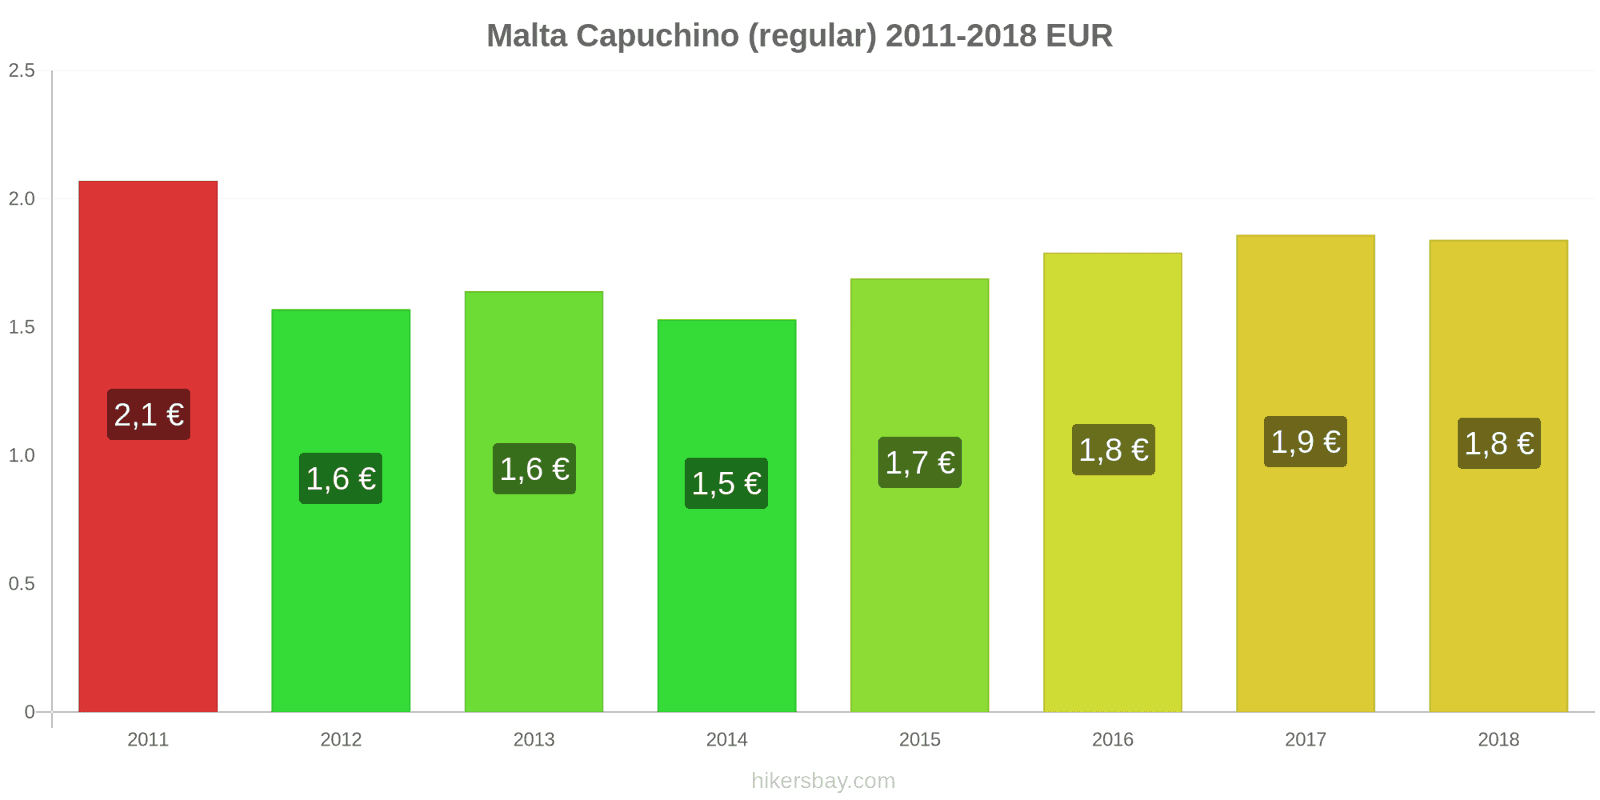 Malta cambios de precios Cappuccino hikersbay.com